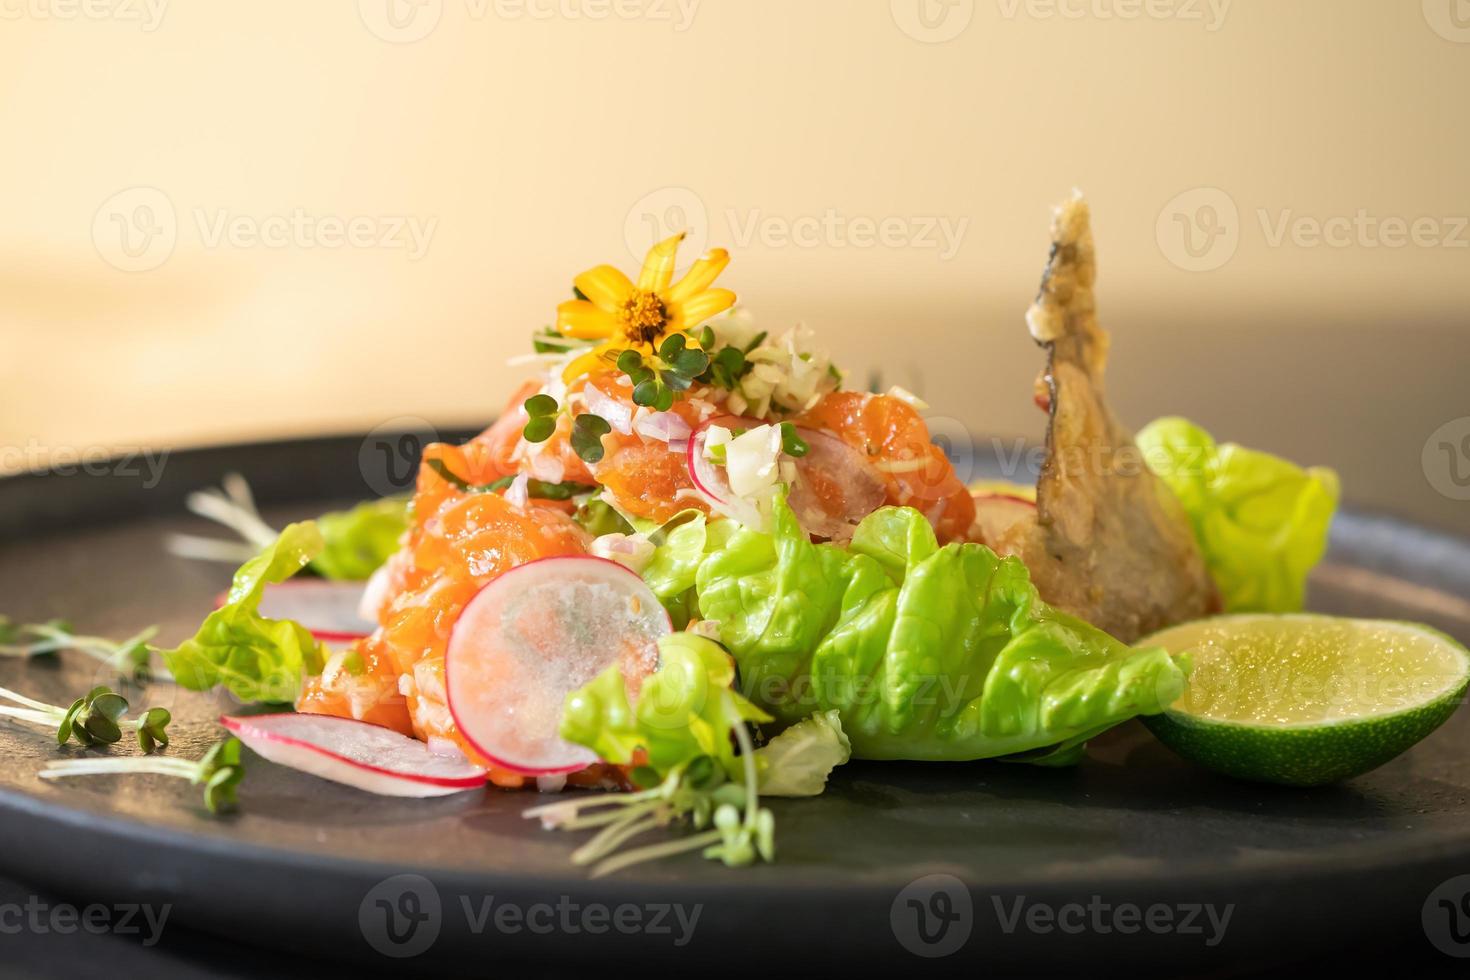 feche o estilo de comida tailandesa de salada de salmão cru picante decorado com pele de peixe frito crocante e flor amarela no topo e micro erva ao redor do prato. pronto para servir e comer. foto